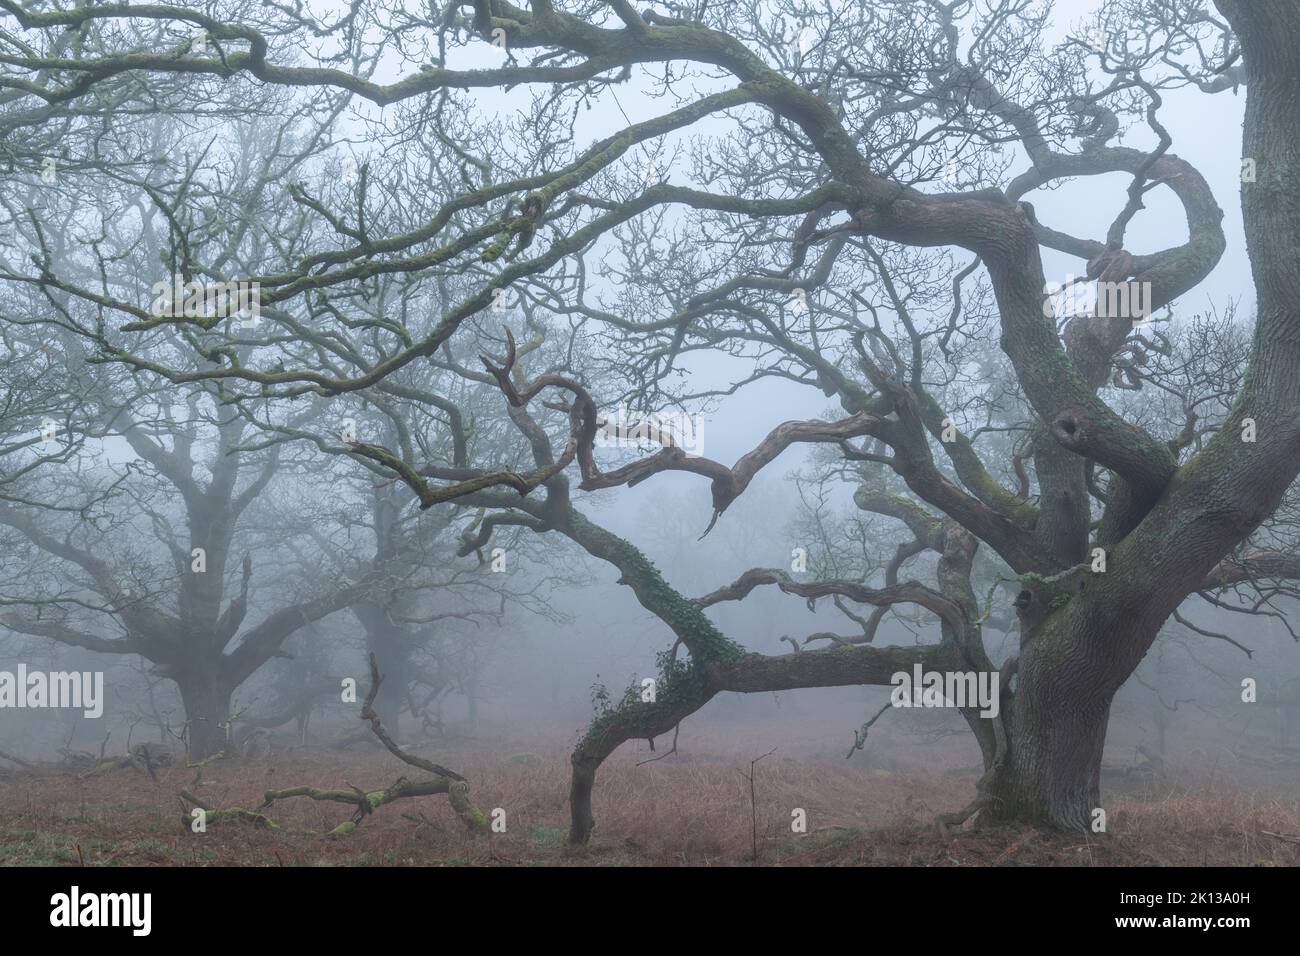 Bois de chêne créepy dans le brouillard du matin, parc national de Dartmoor, Devon, Angleterre, Royaume-Uni, Europe Banque D'Images